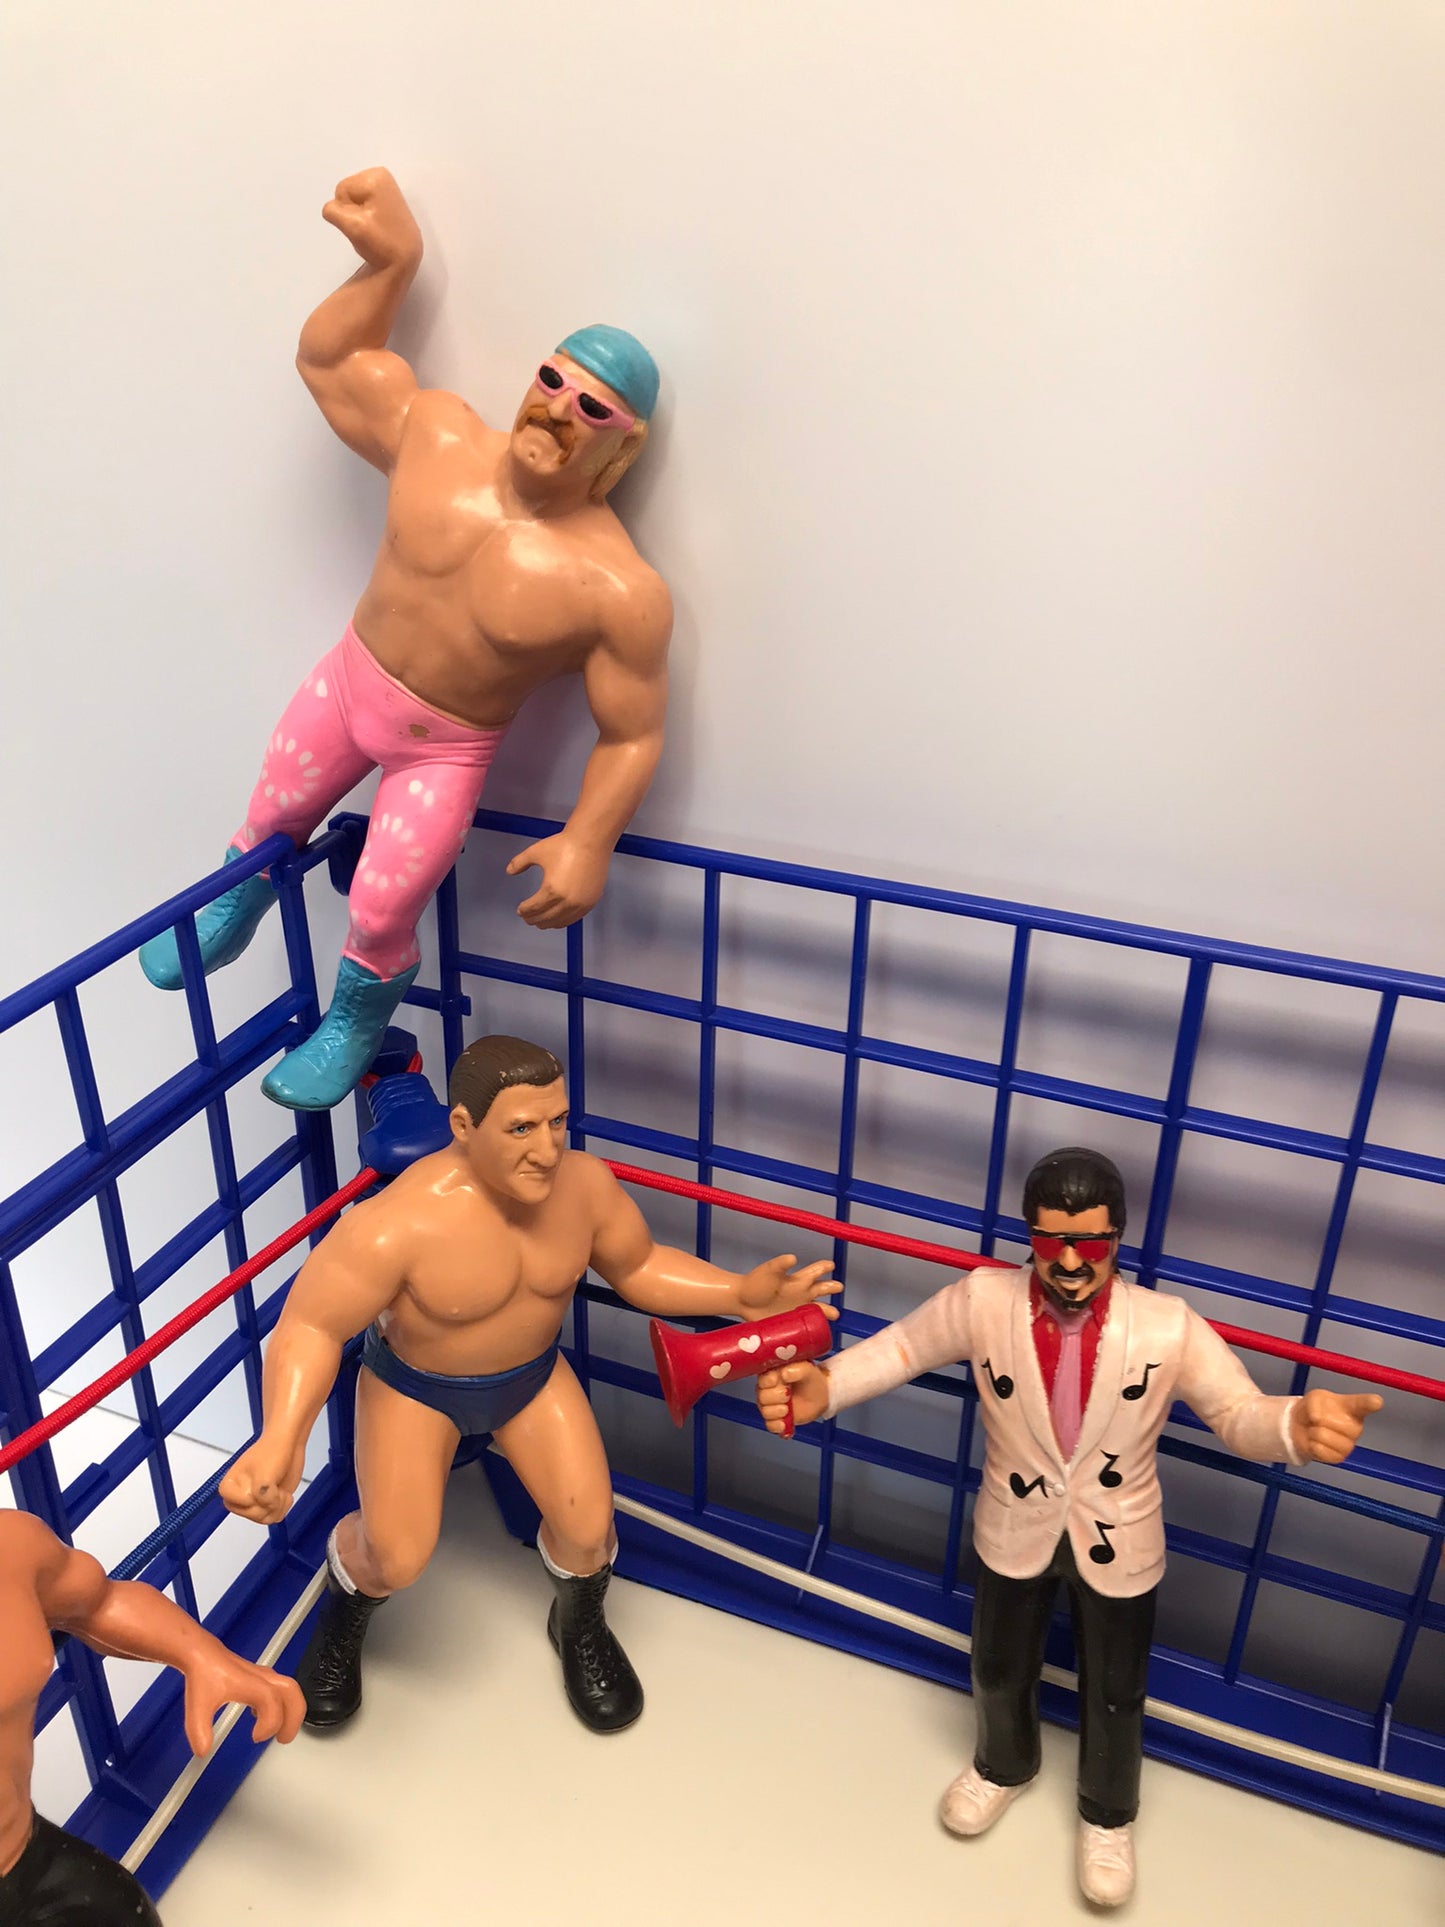 1985 Vintage WWF LJN Sling Em Fling Em Wrestling Ring With Original Rubber Action Figure Men RARE